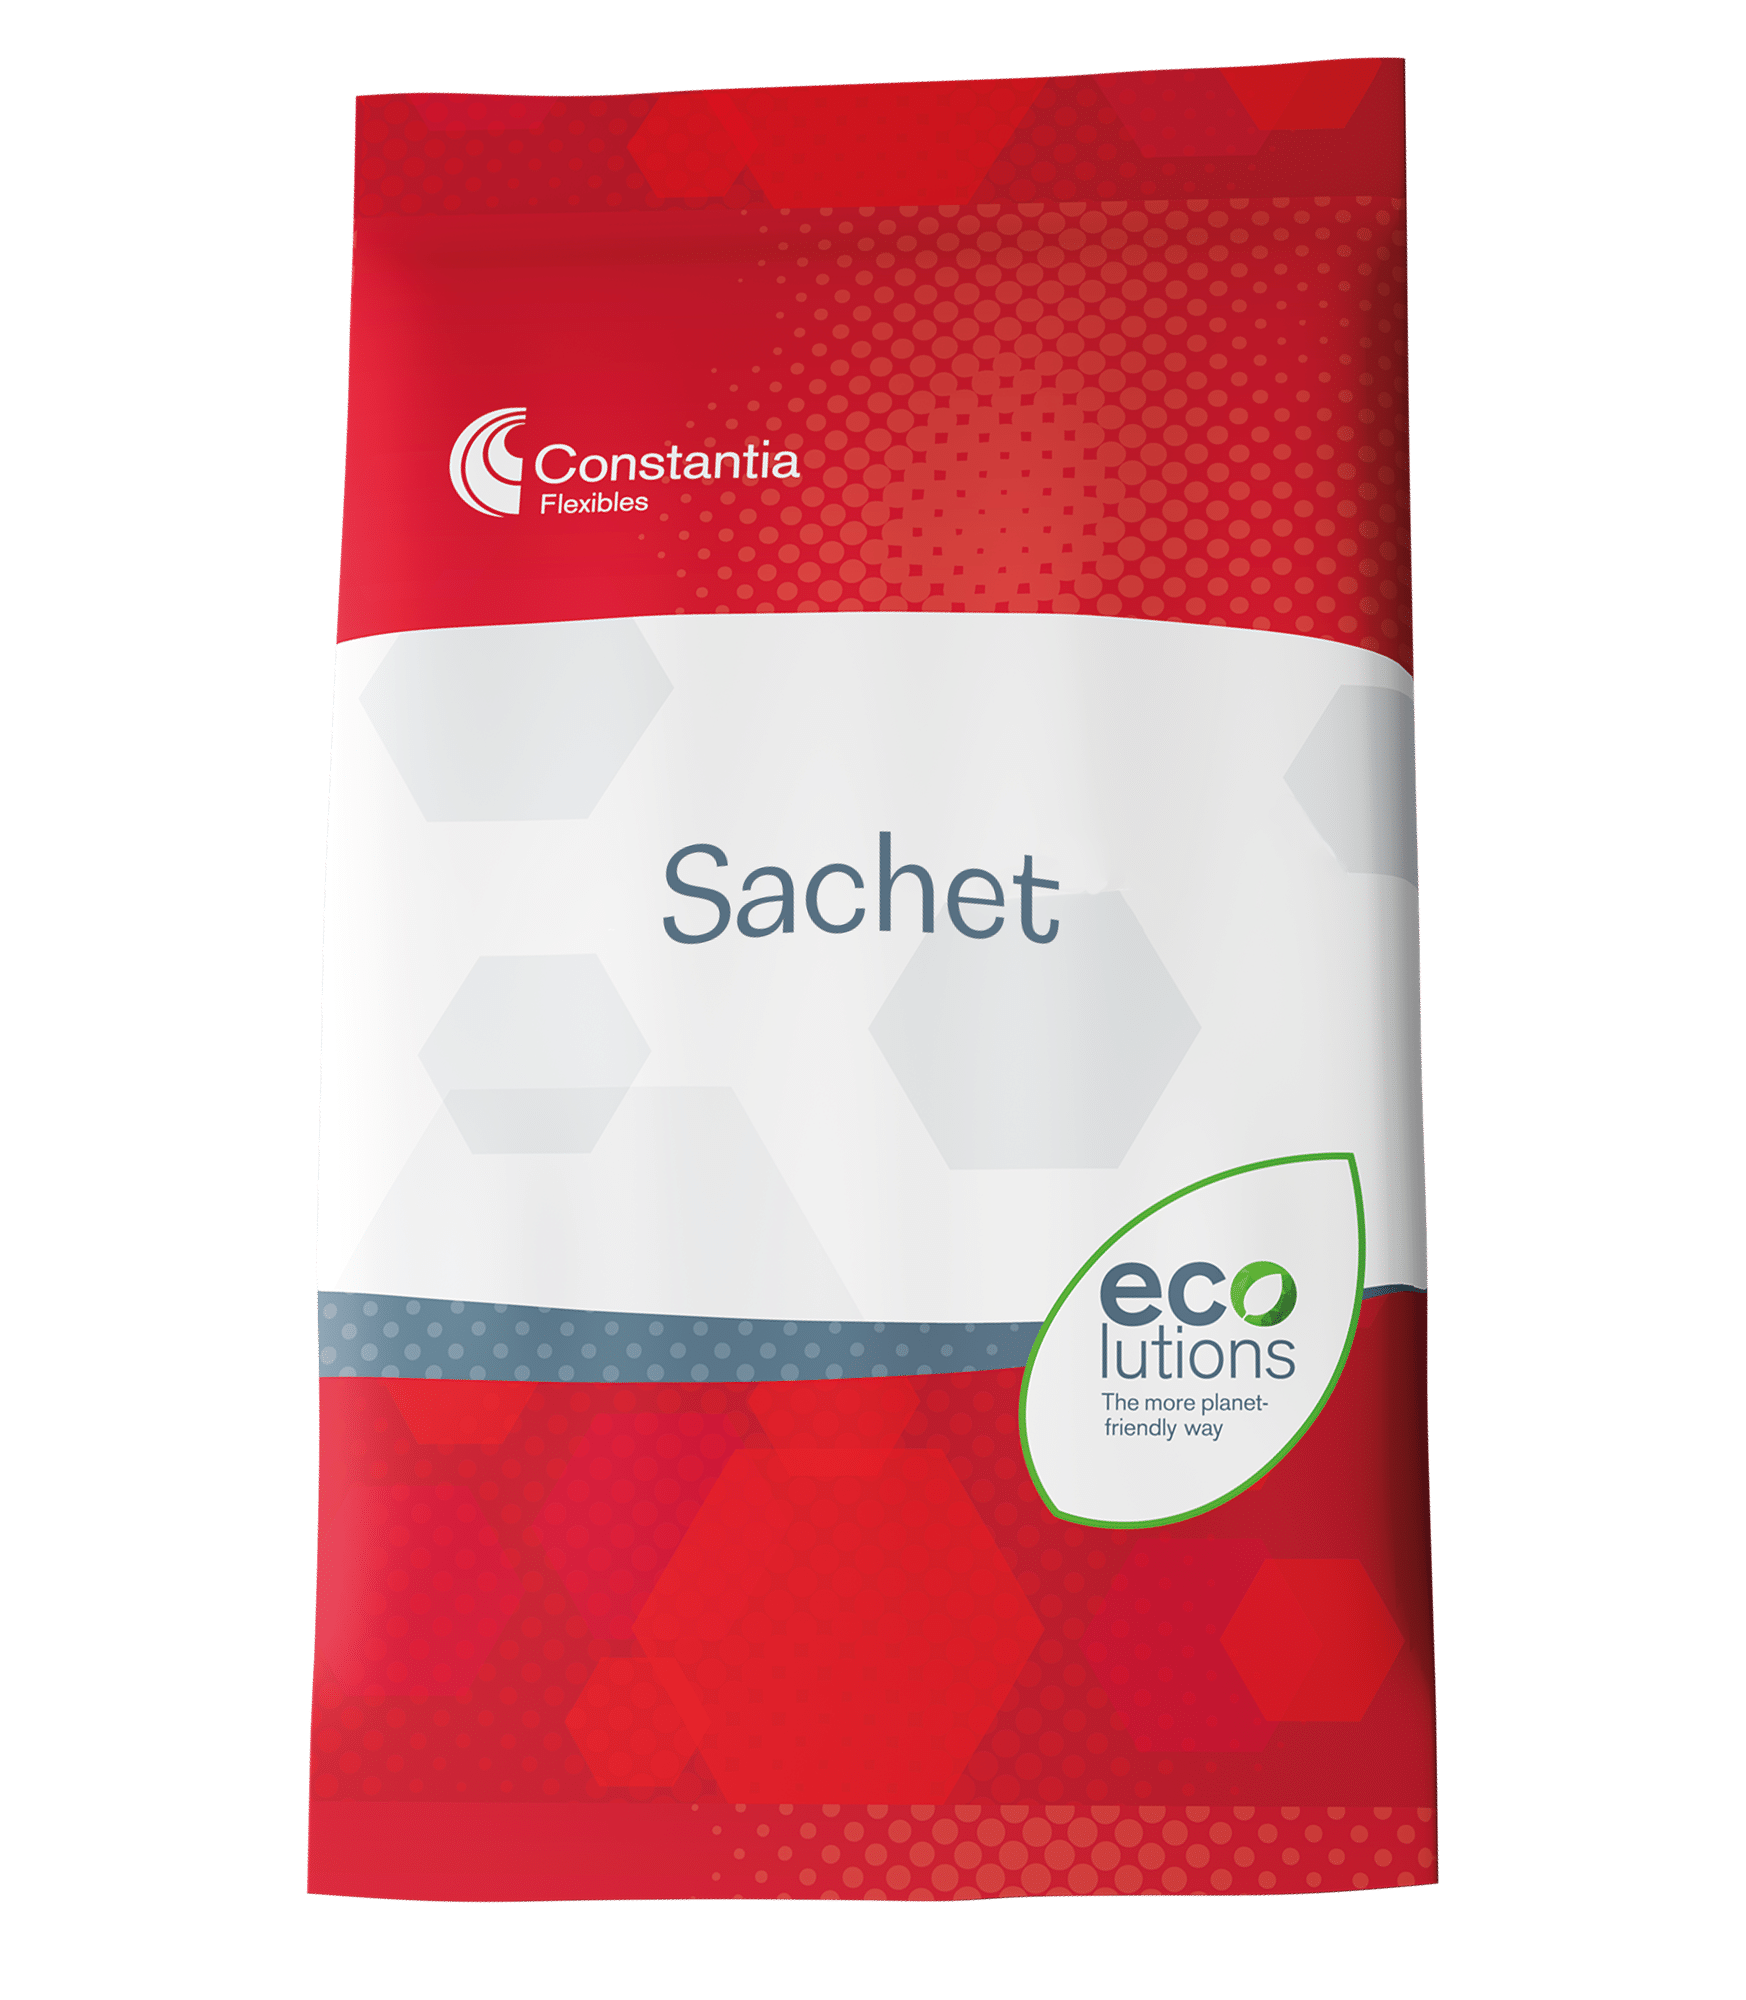 Sachet packaging